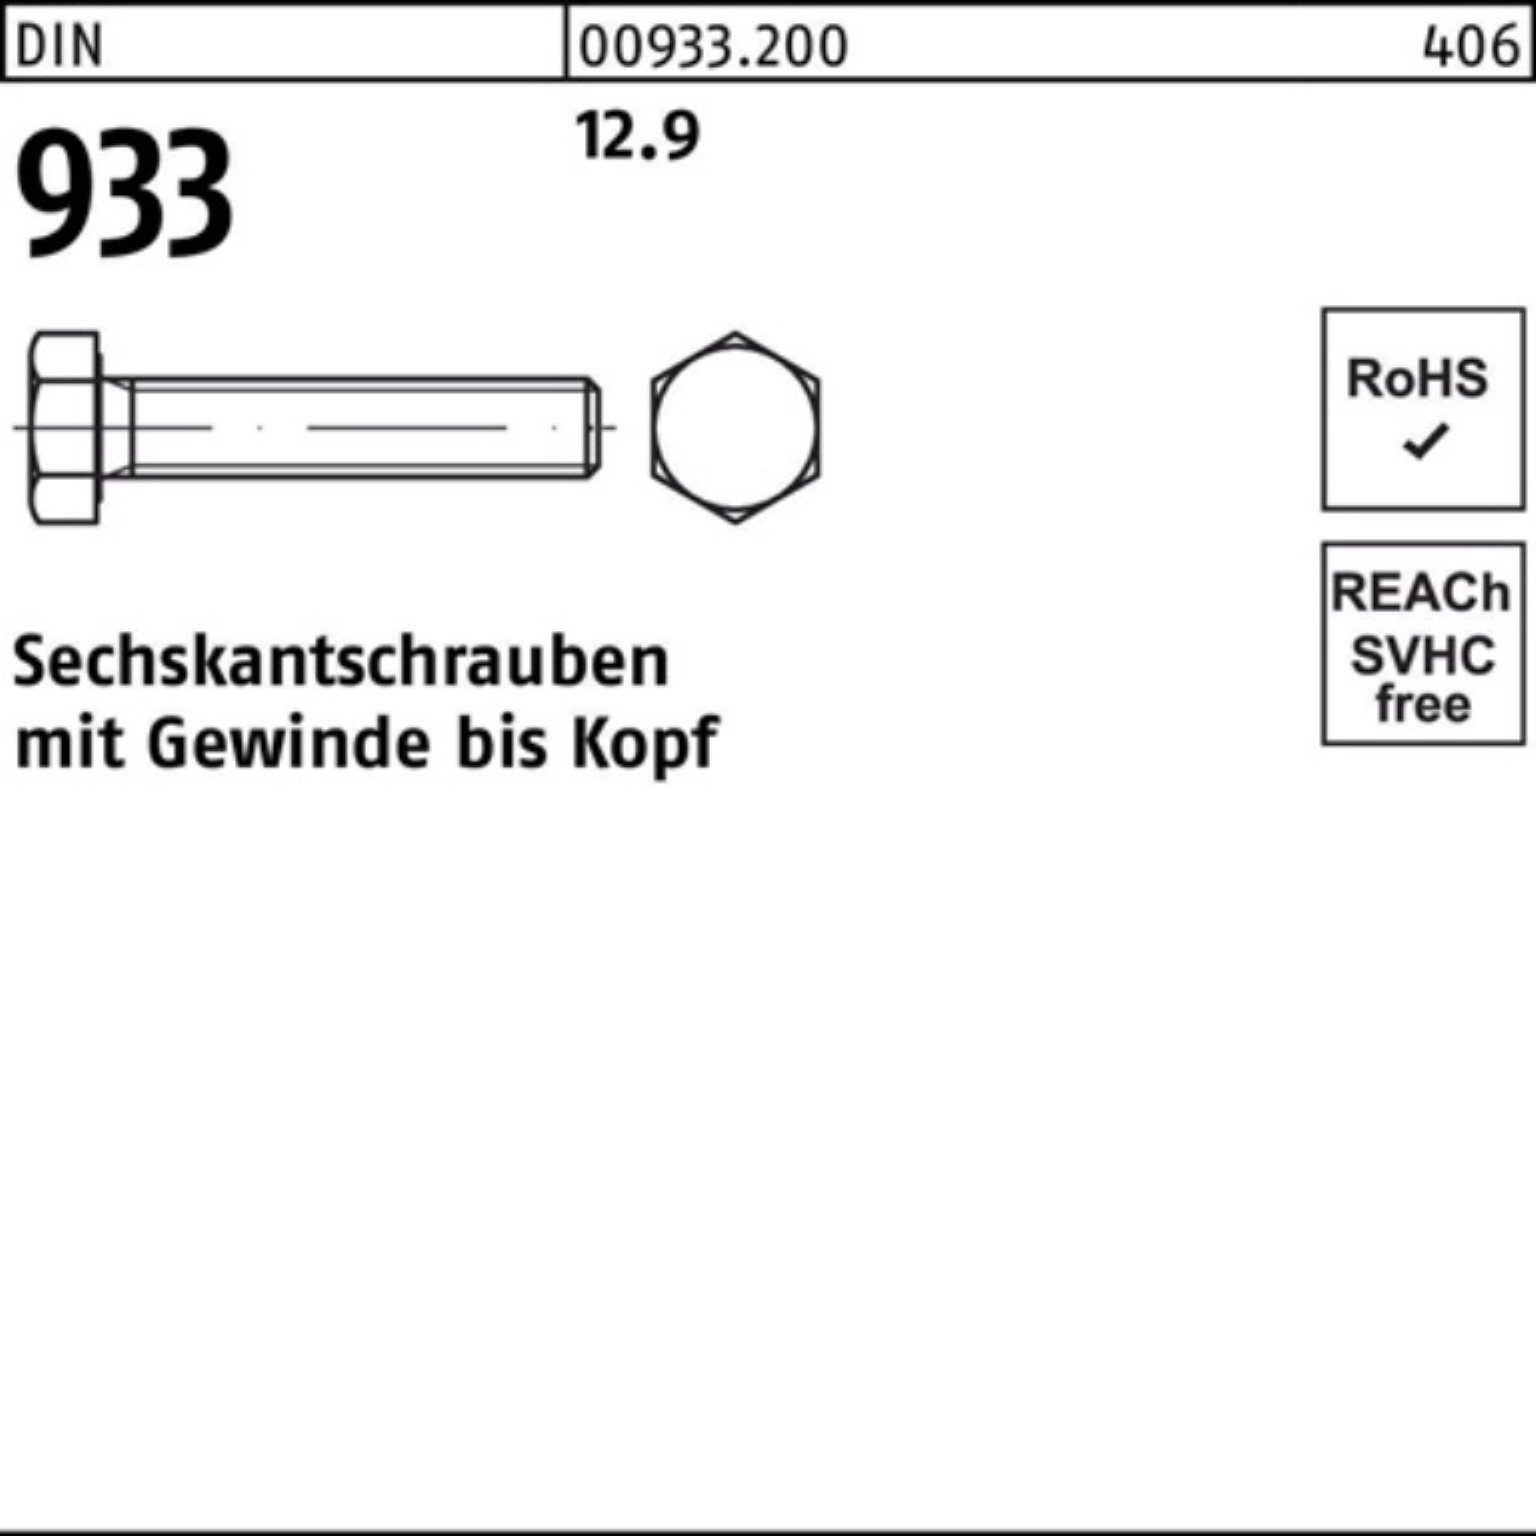 DIN M8x Sechskantschraube 200 VG 200er 933 Sechskantschraube 12.9 Pack Reyher 933 25 DIN Stück